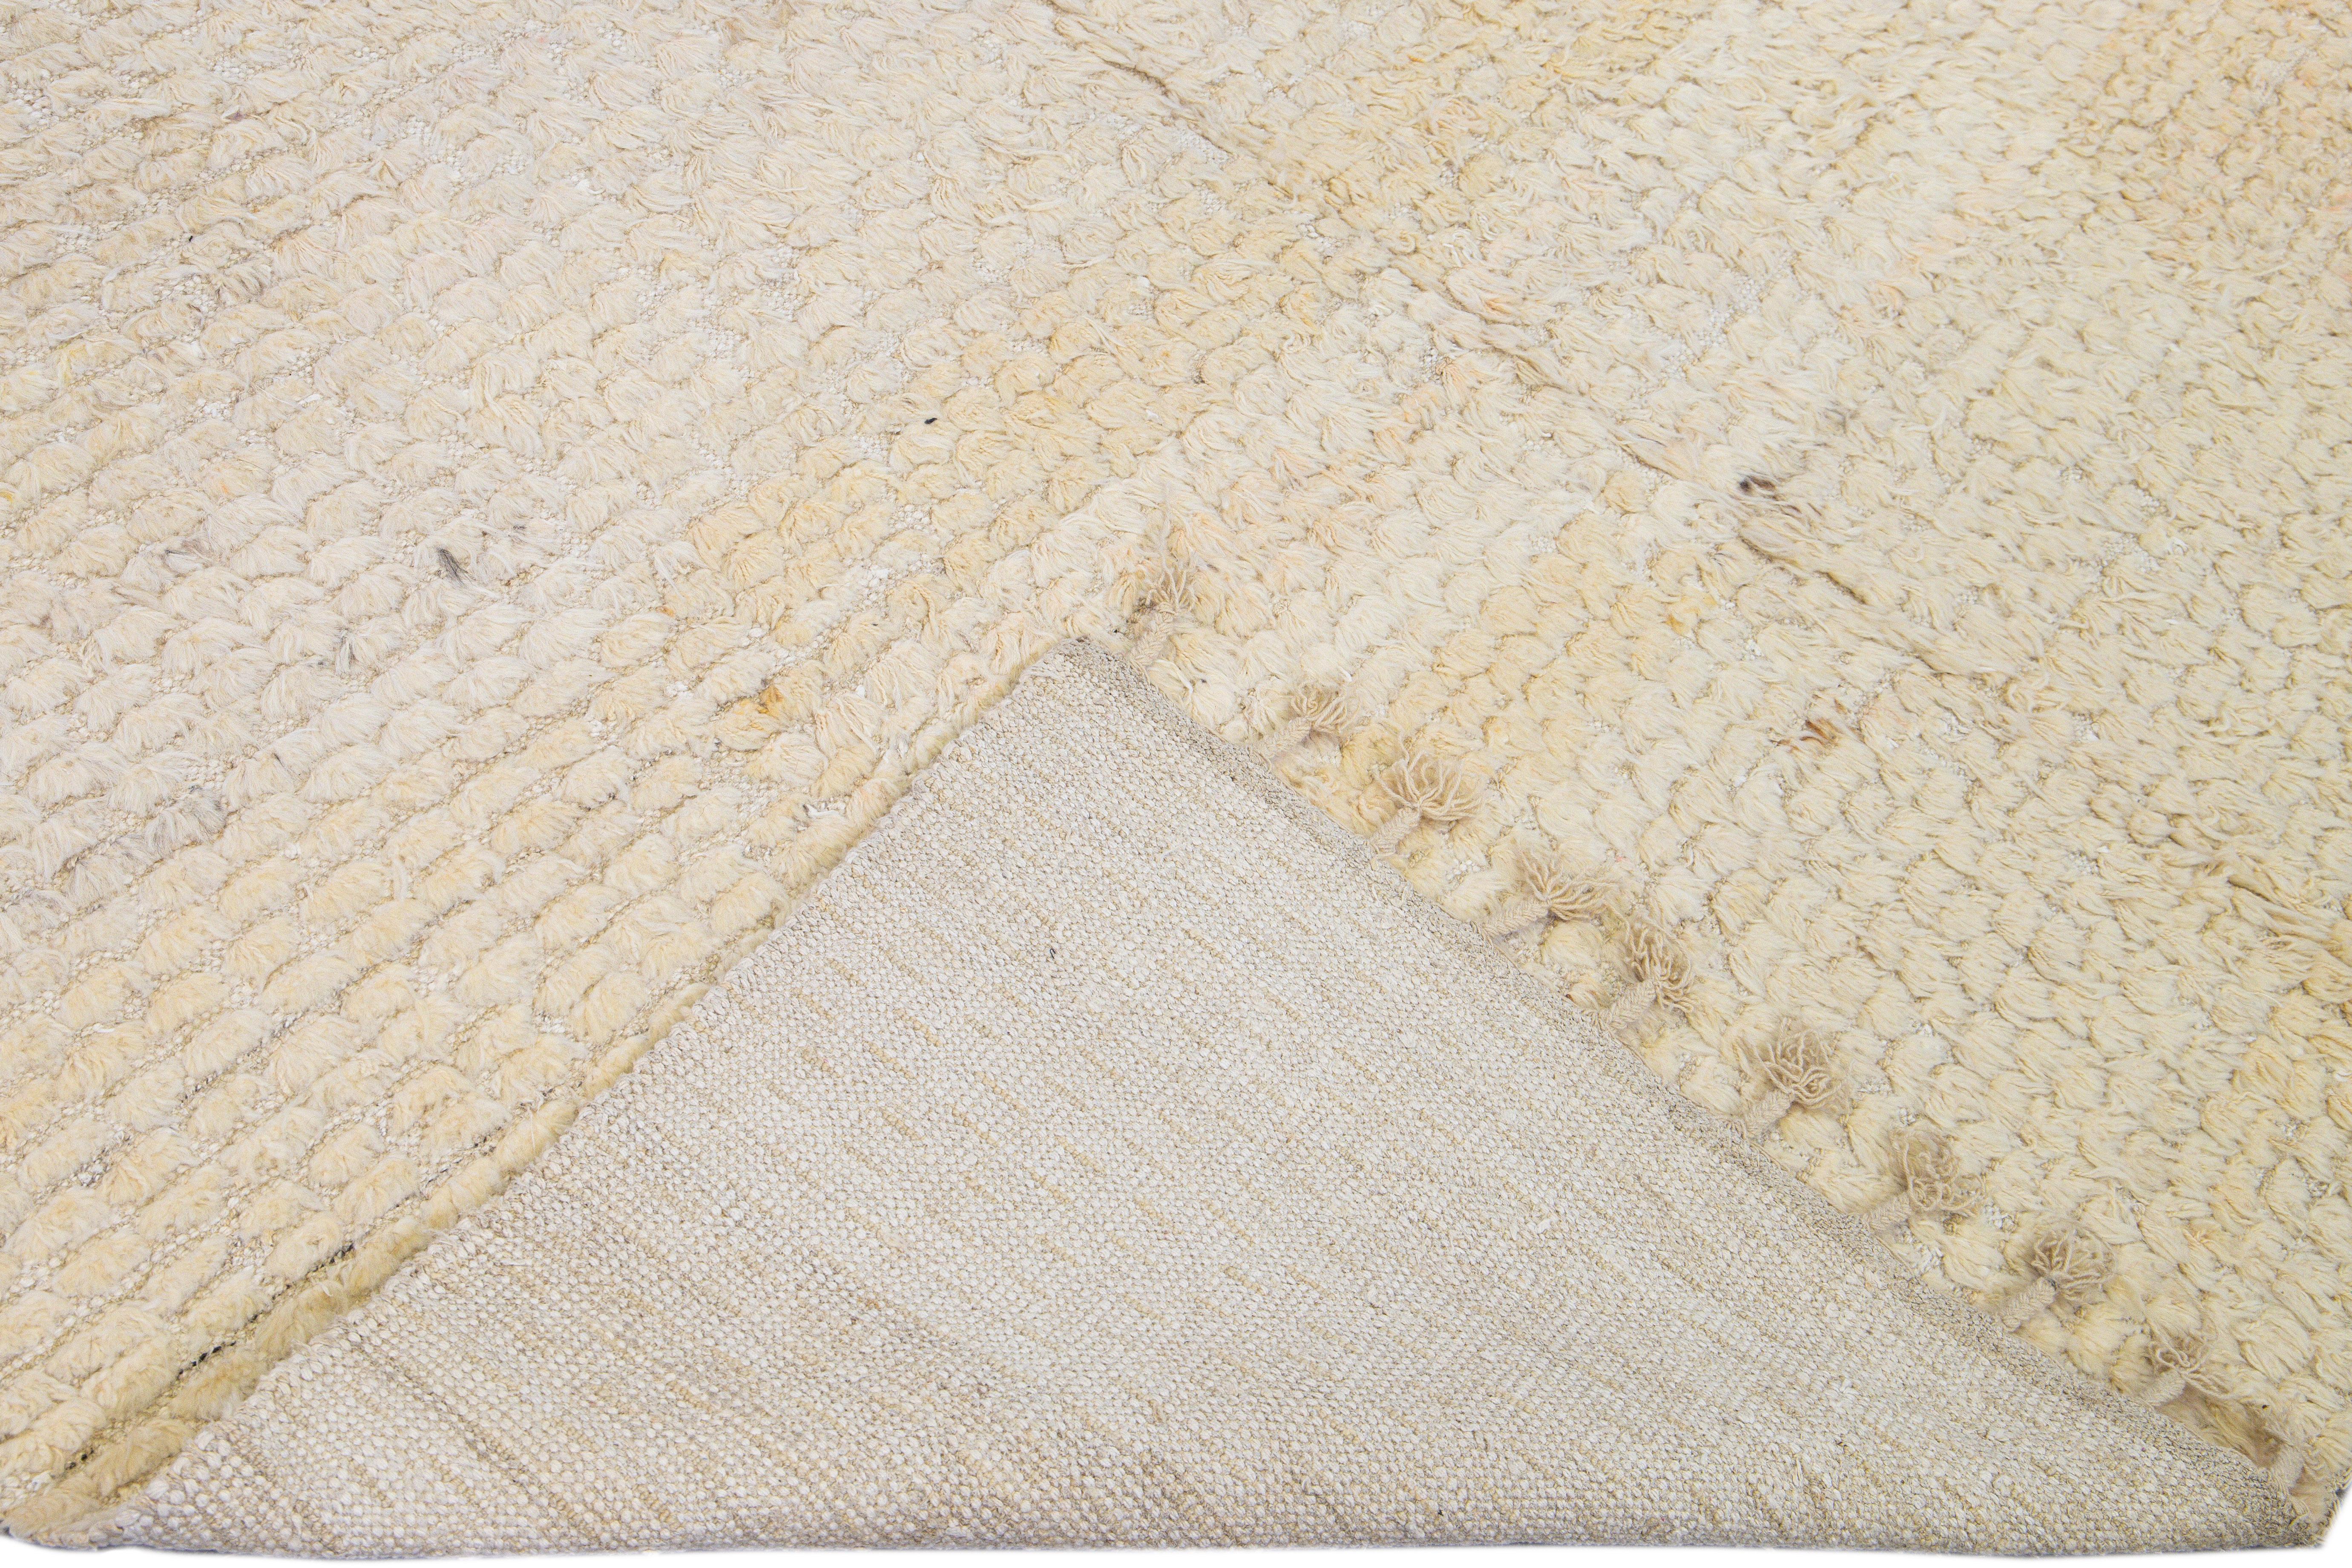 Schöner Tulu-Flachgewebeteppich aus Wolle mit elfenbeinfarbenem und beigem Feld und Akzenten. Dieser Tulu-Teppich hat Fransen in einem prächtigen, durchgehenden Muster.

Dieser Teppich misst: 8'2